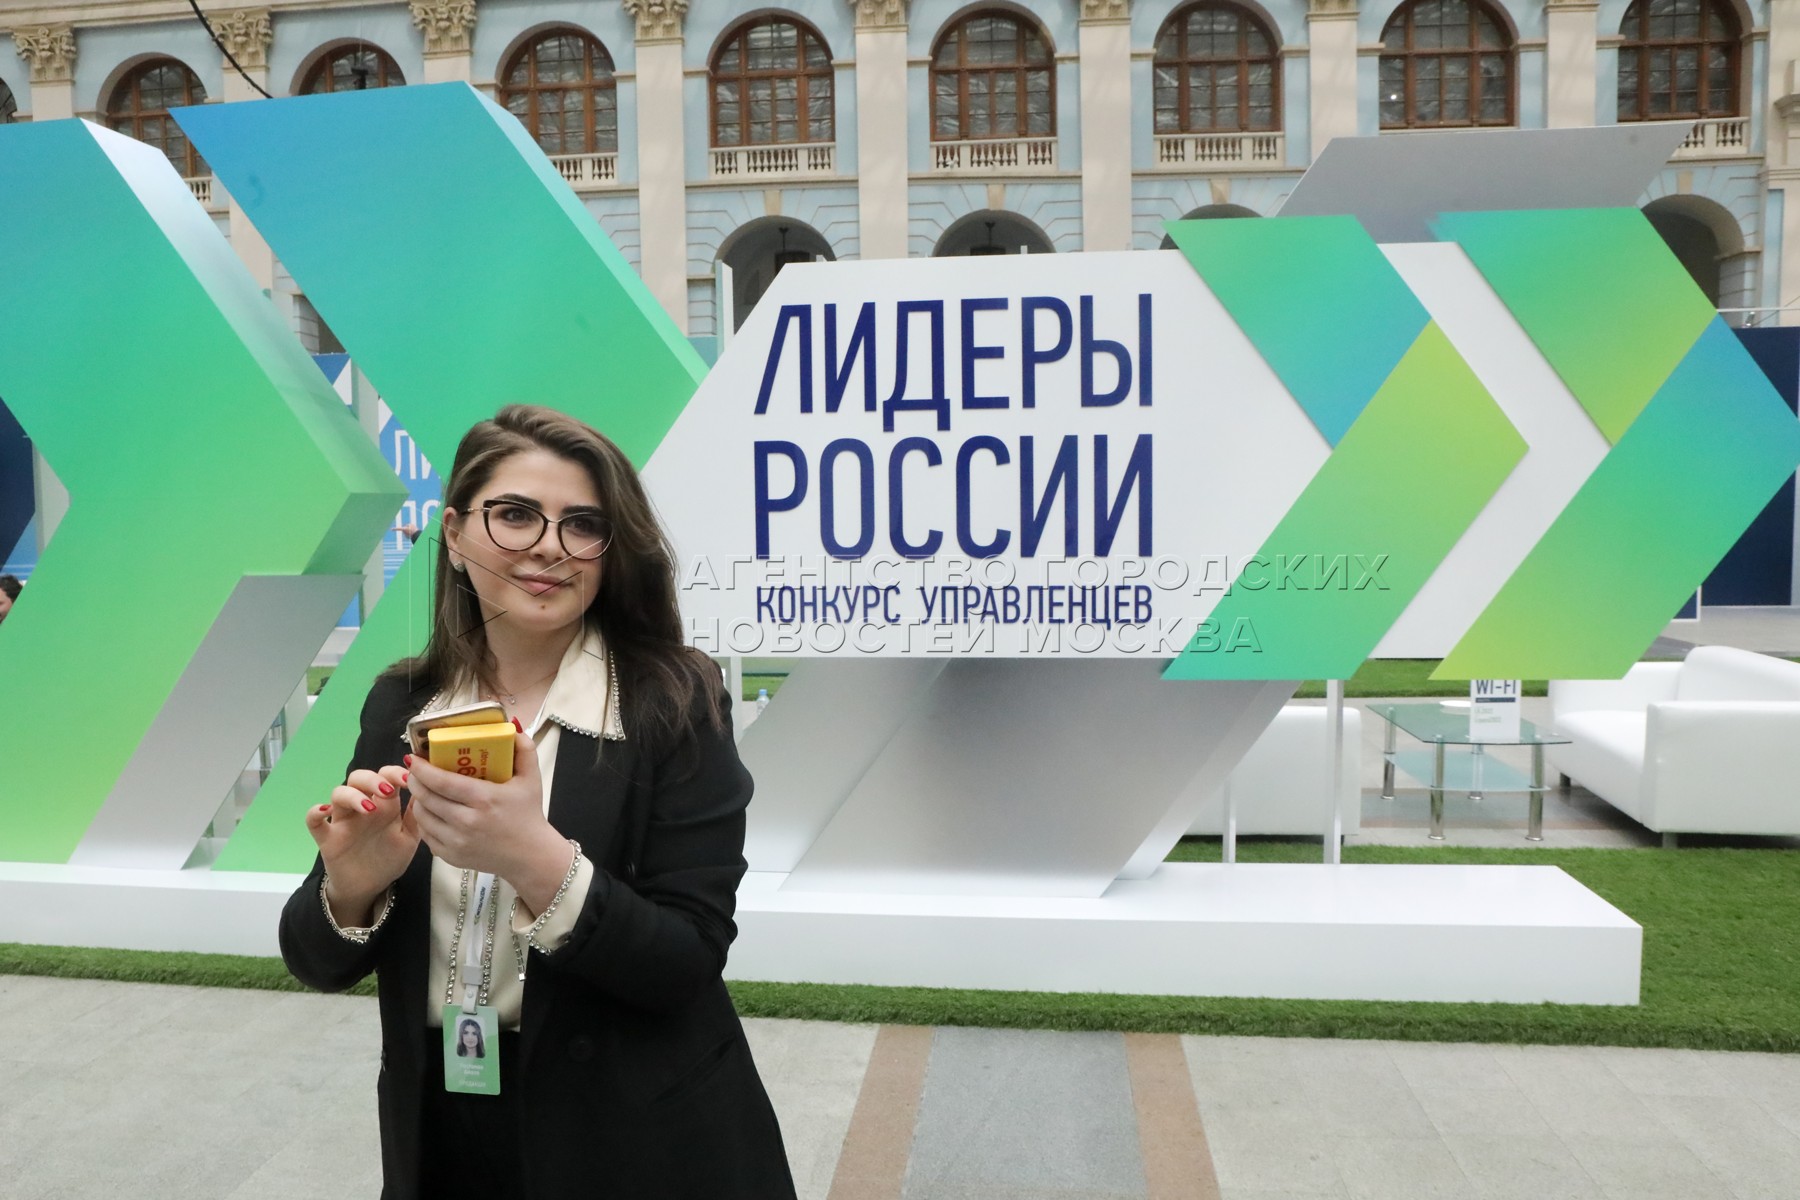 «Лидеры России» — открытый конкурс для руководителей нового поколения